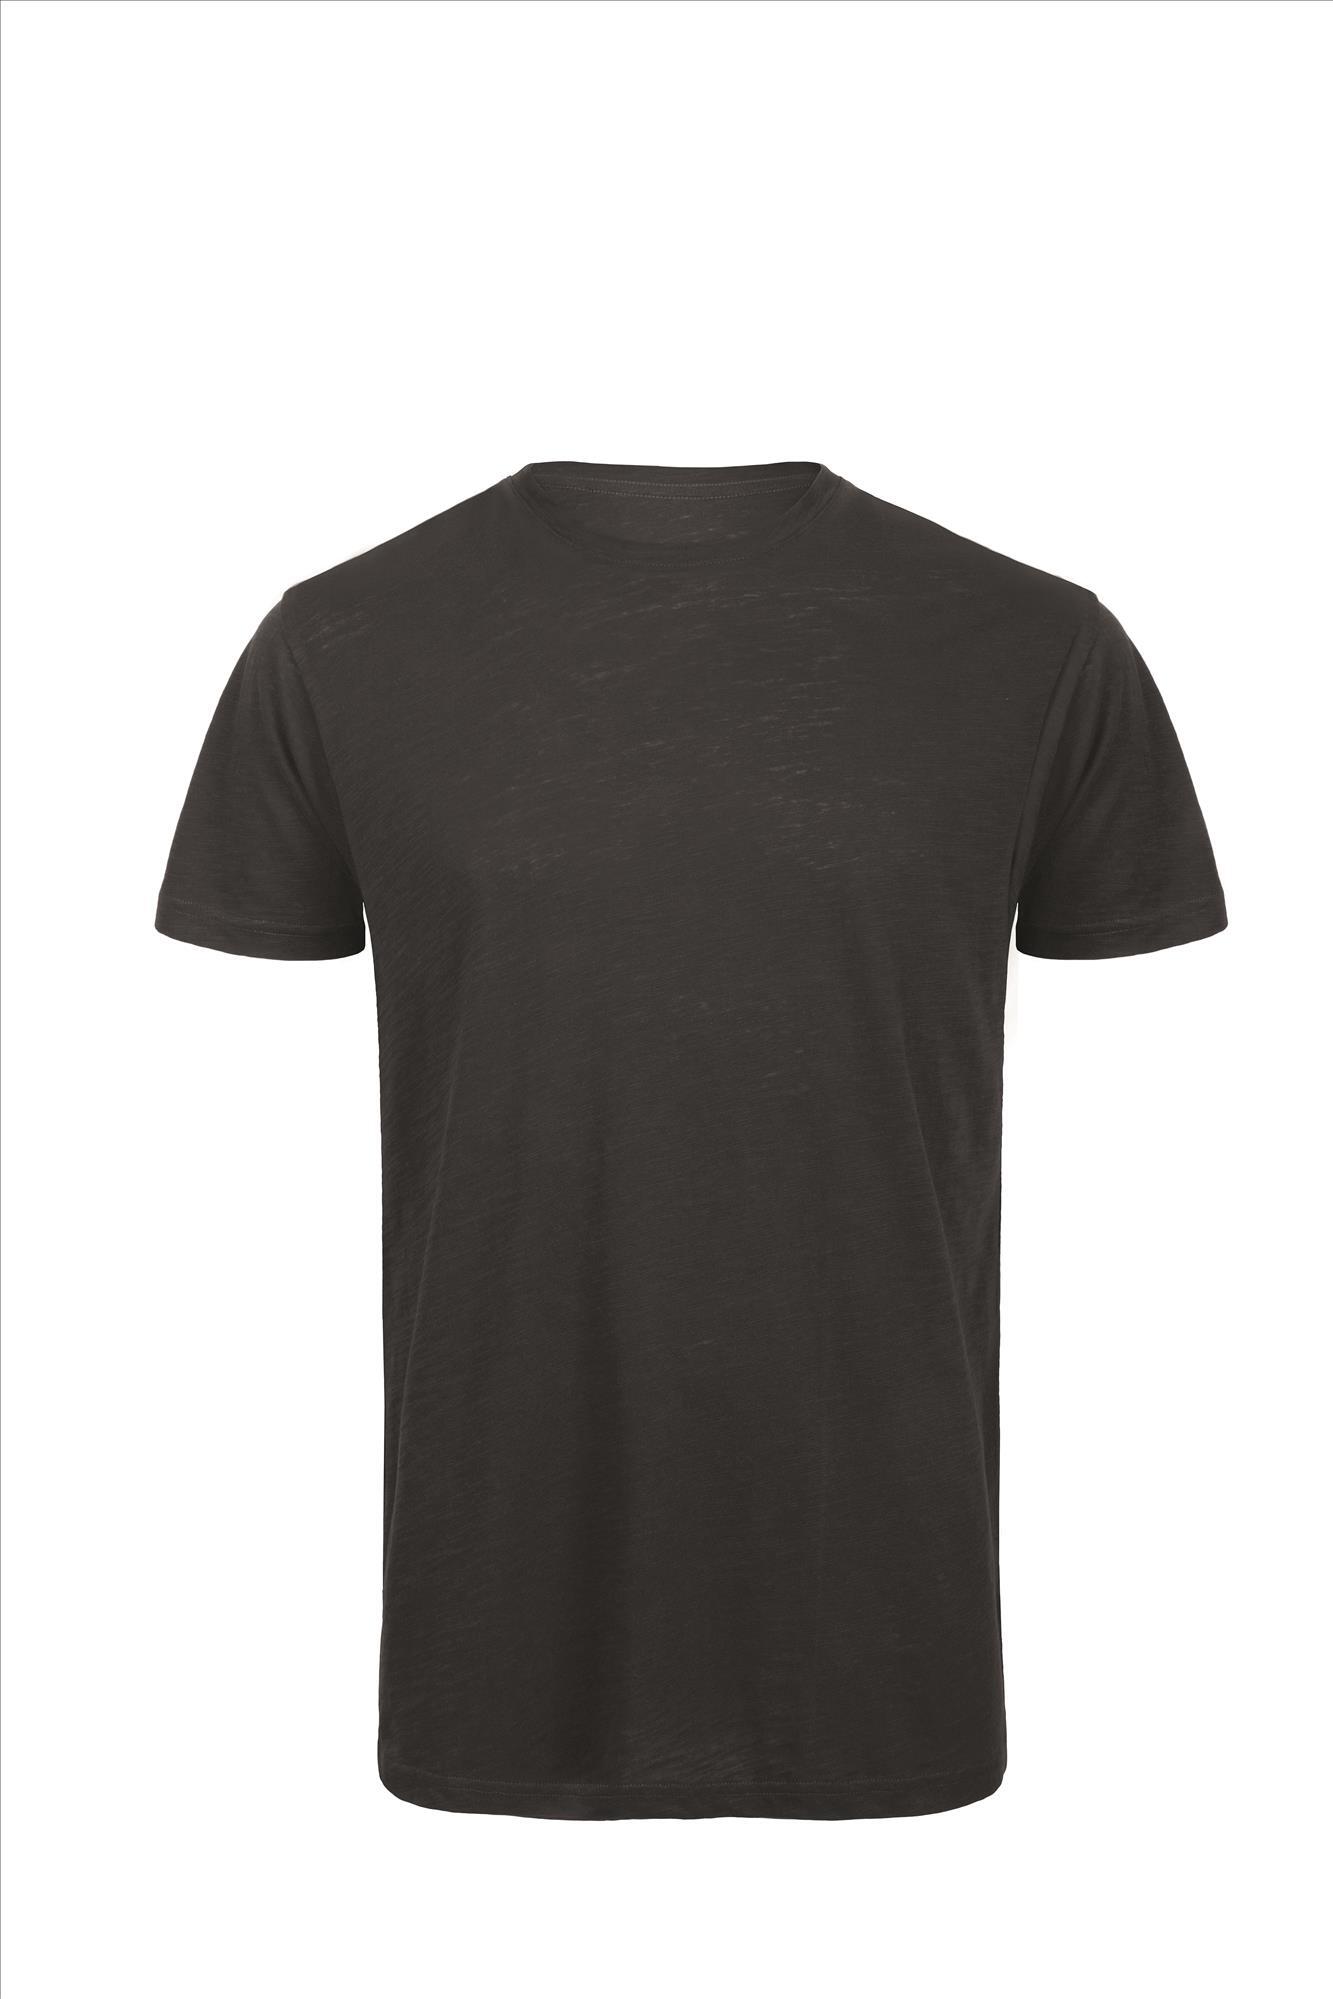 Heren T-shirt chic black korte mouw luxe biokwaliteit te personaliseren